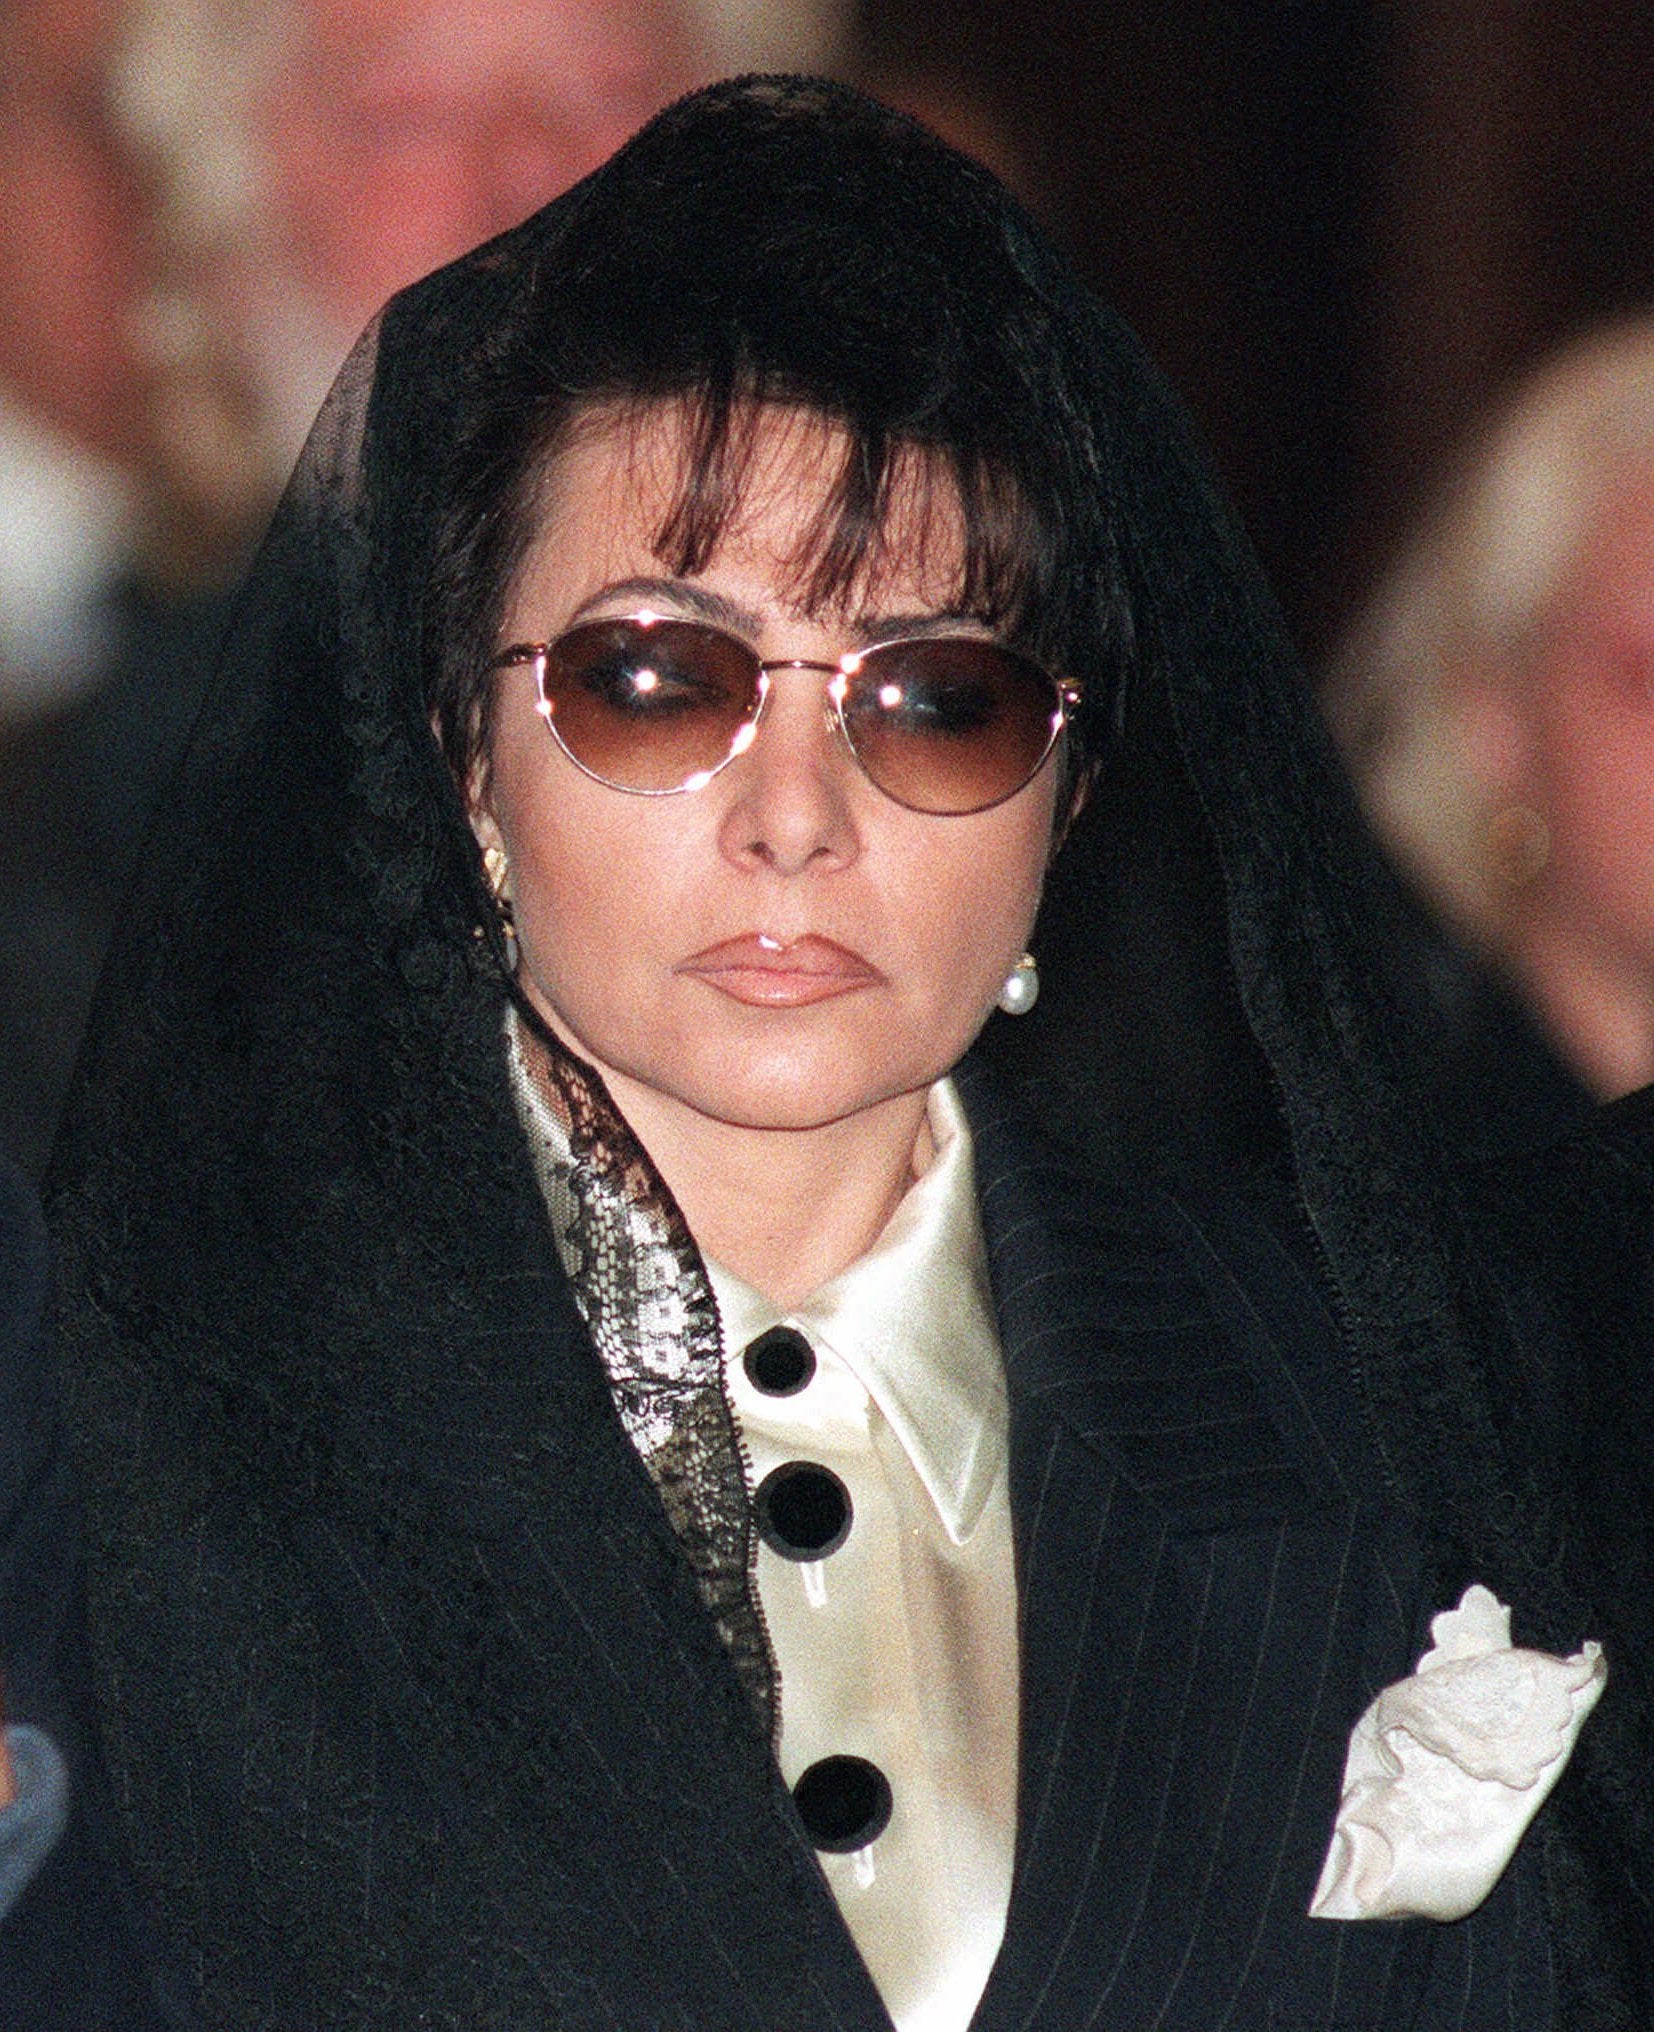 Patrizia Reggiani at Maurizio Gucci’s funeral on 3 April 1995